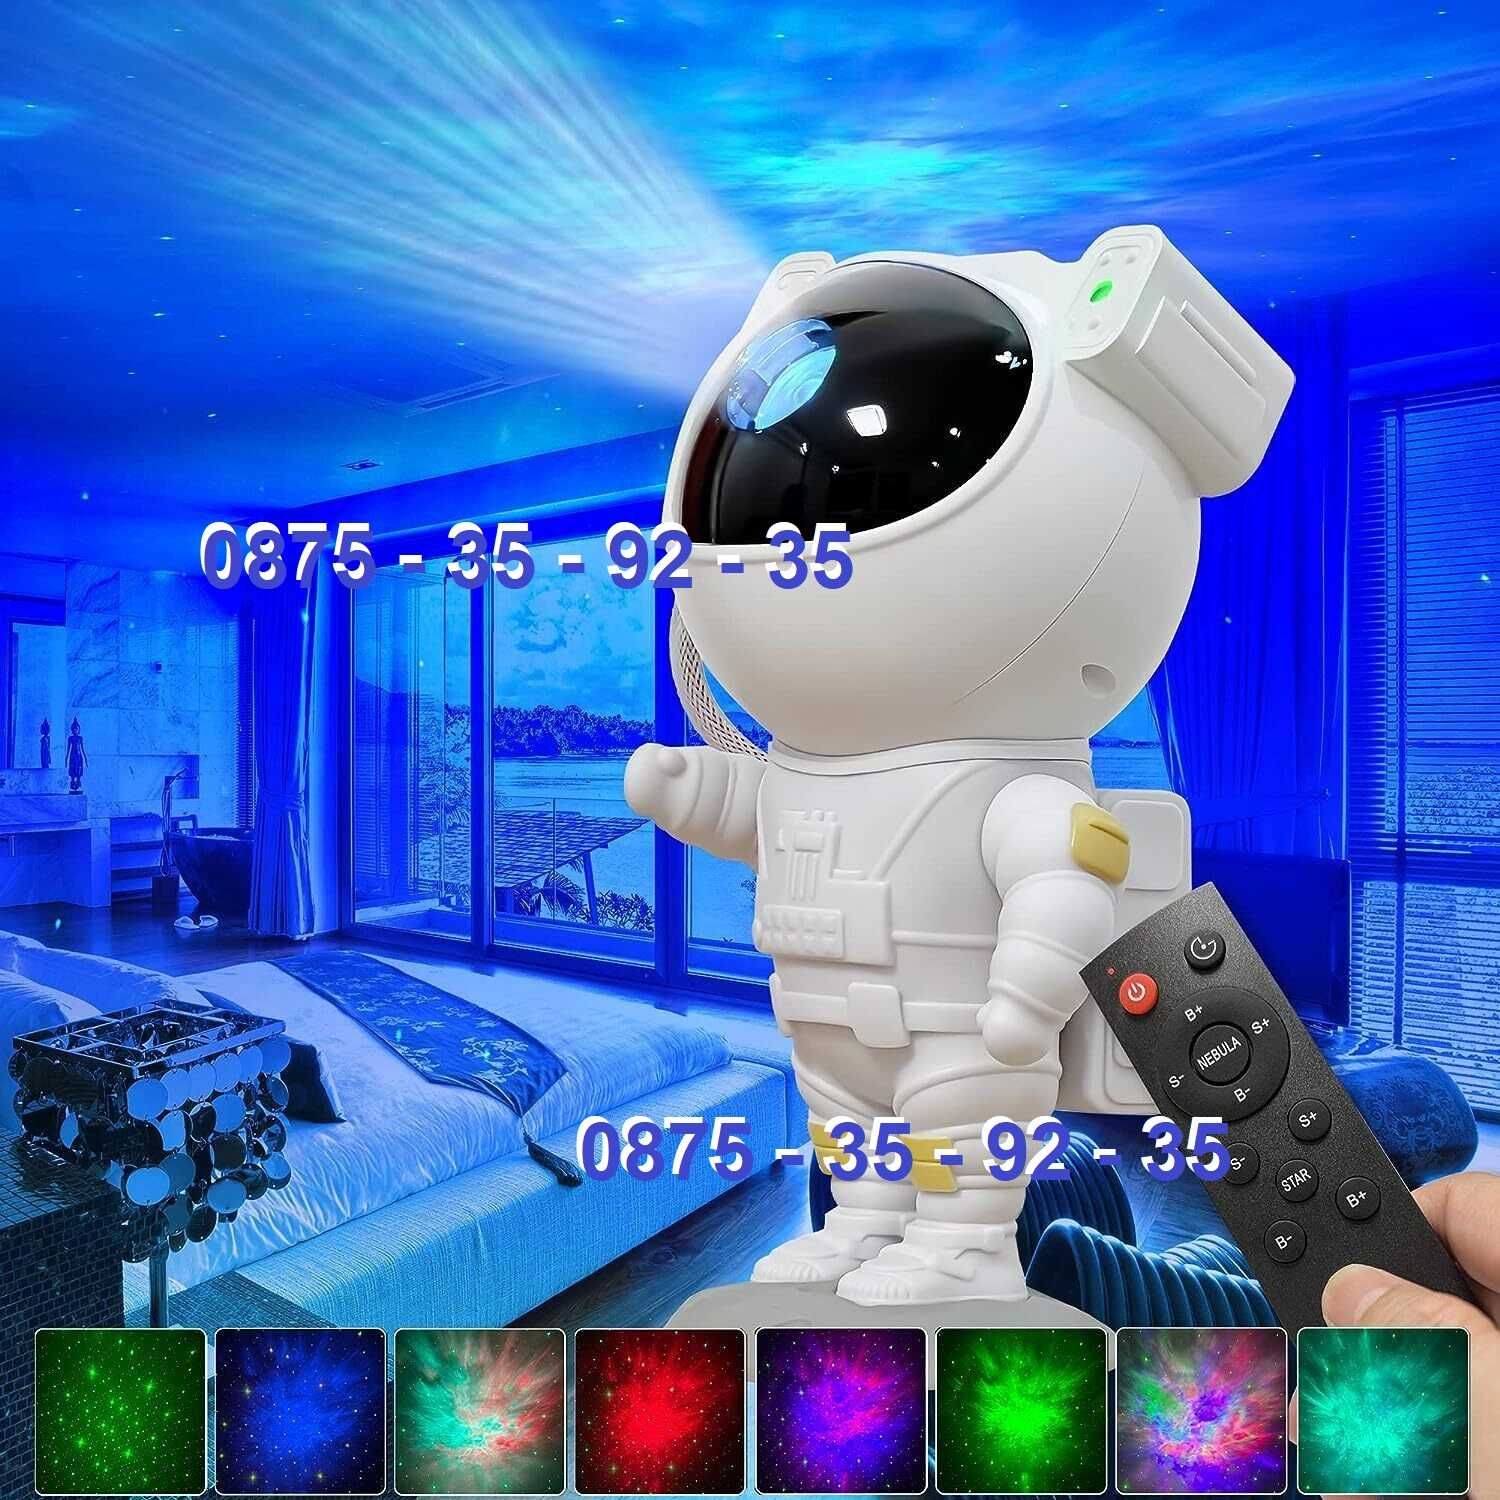 Астронавт прожектор, 3D звездно небе, нощна лампа за деца ASTRONAUT